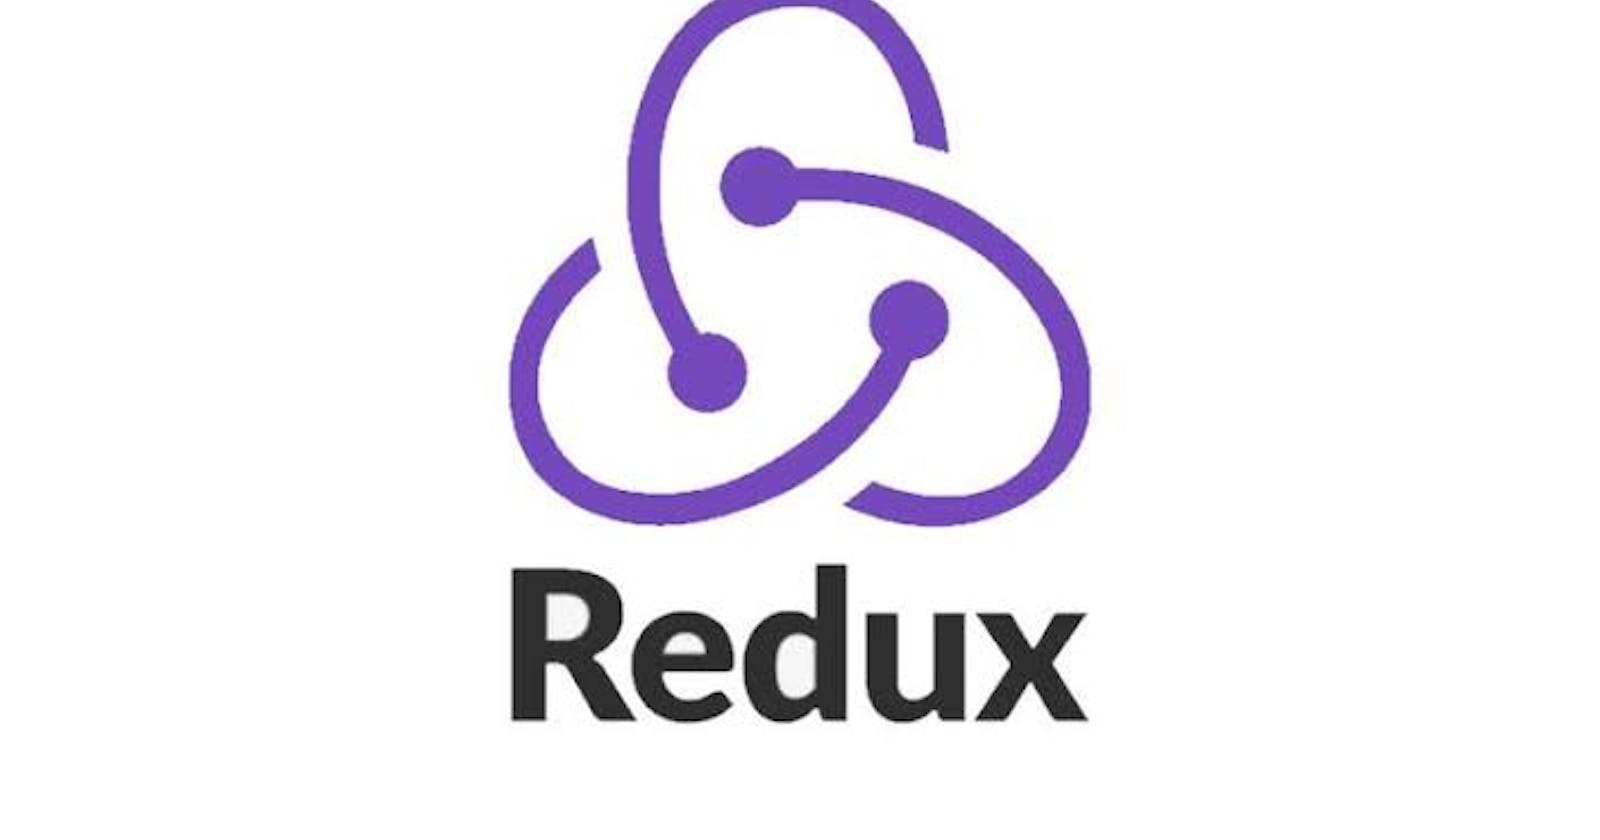 Redux Starter Guide